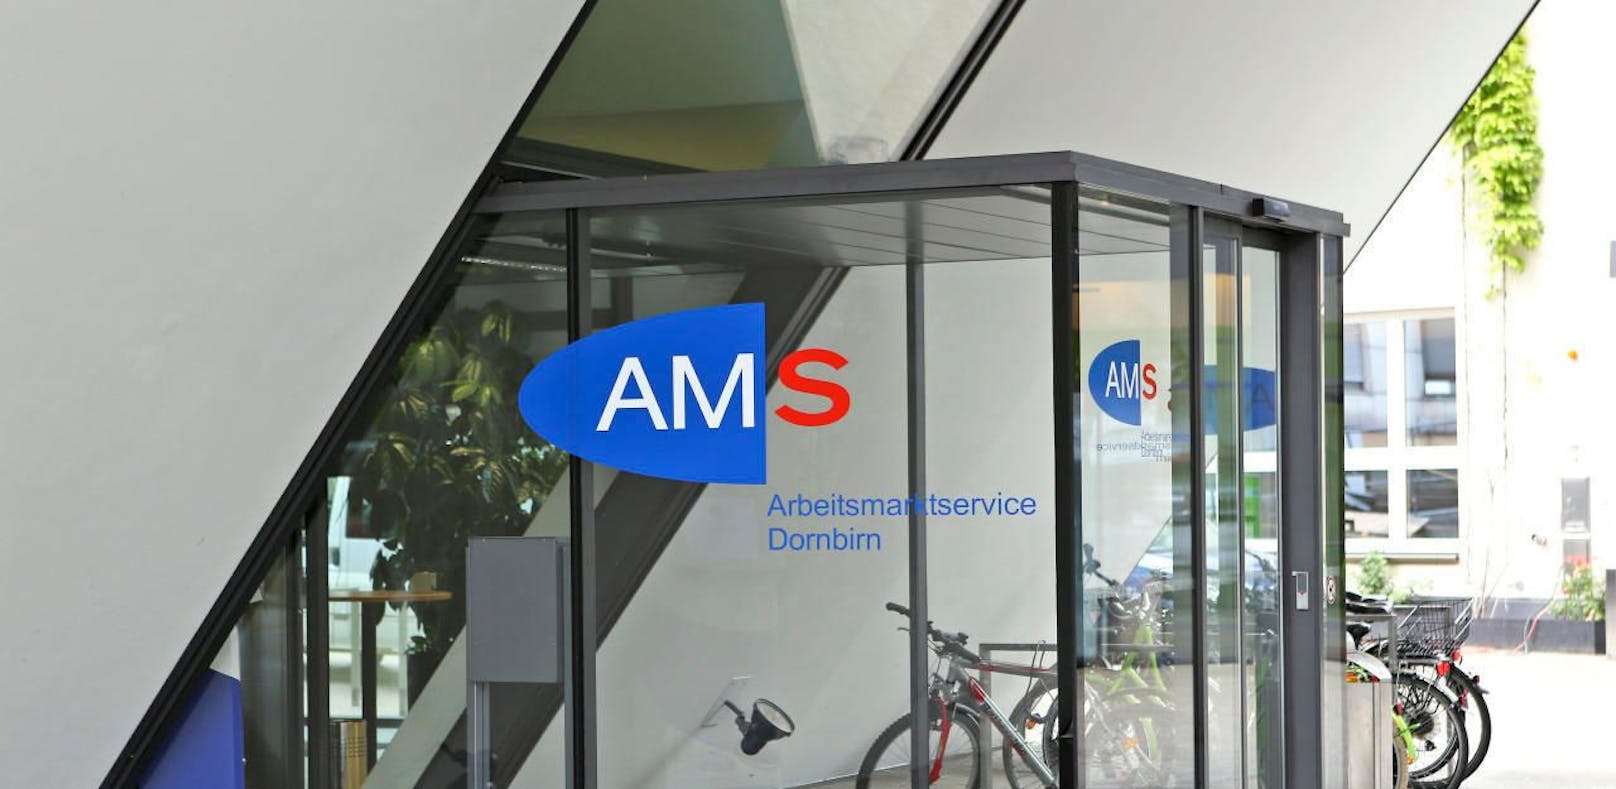 AMS-Anträge sind ohne persönlichen Kontakt möglich. (Archivfoto)